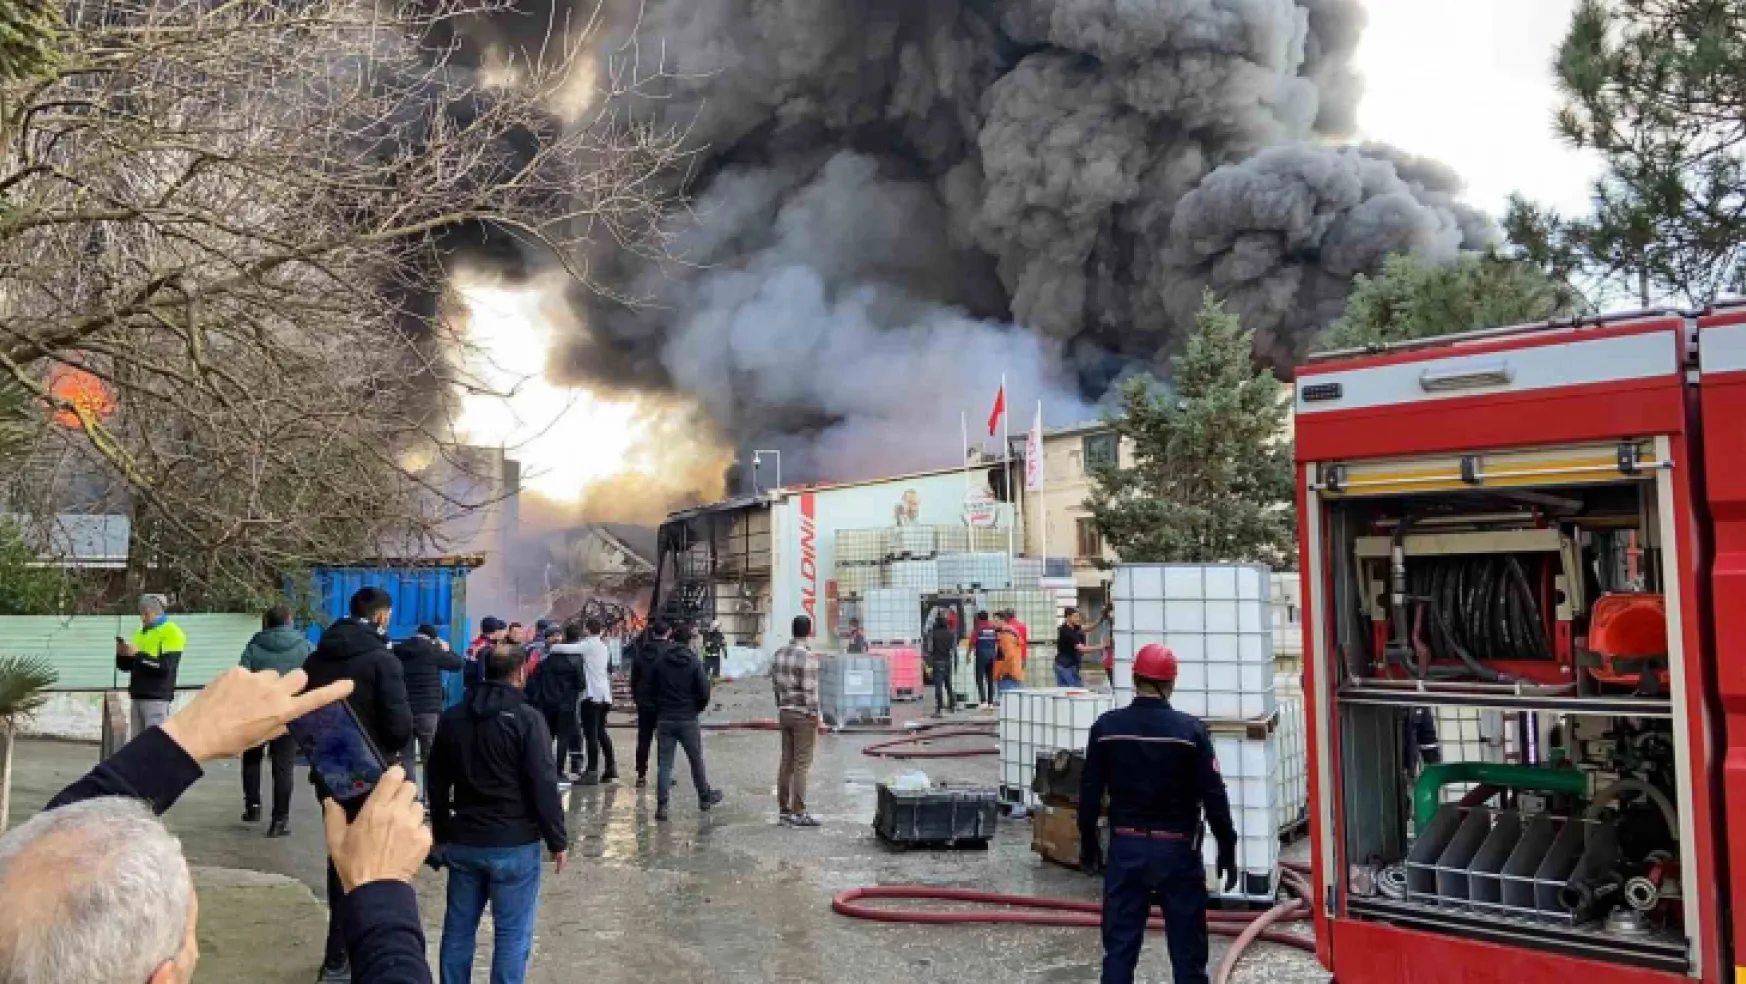 Kocaeli'de fabrikadaki yangını söndürme çalışmaları devam ediyor